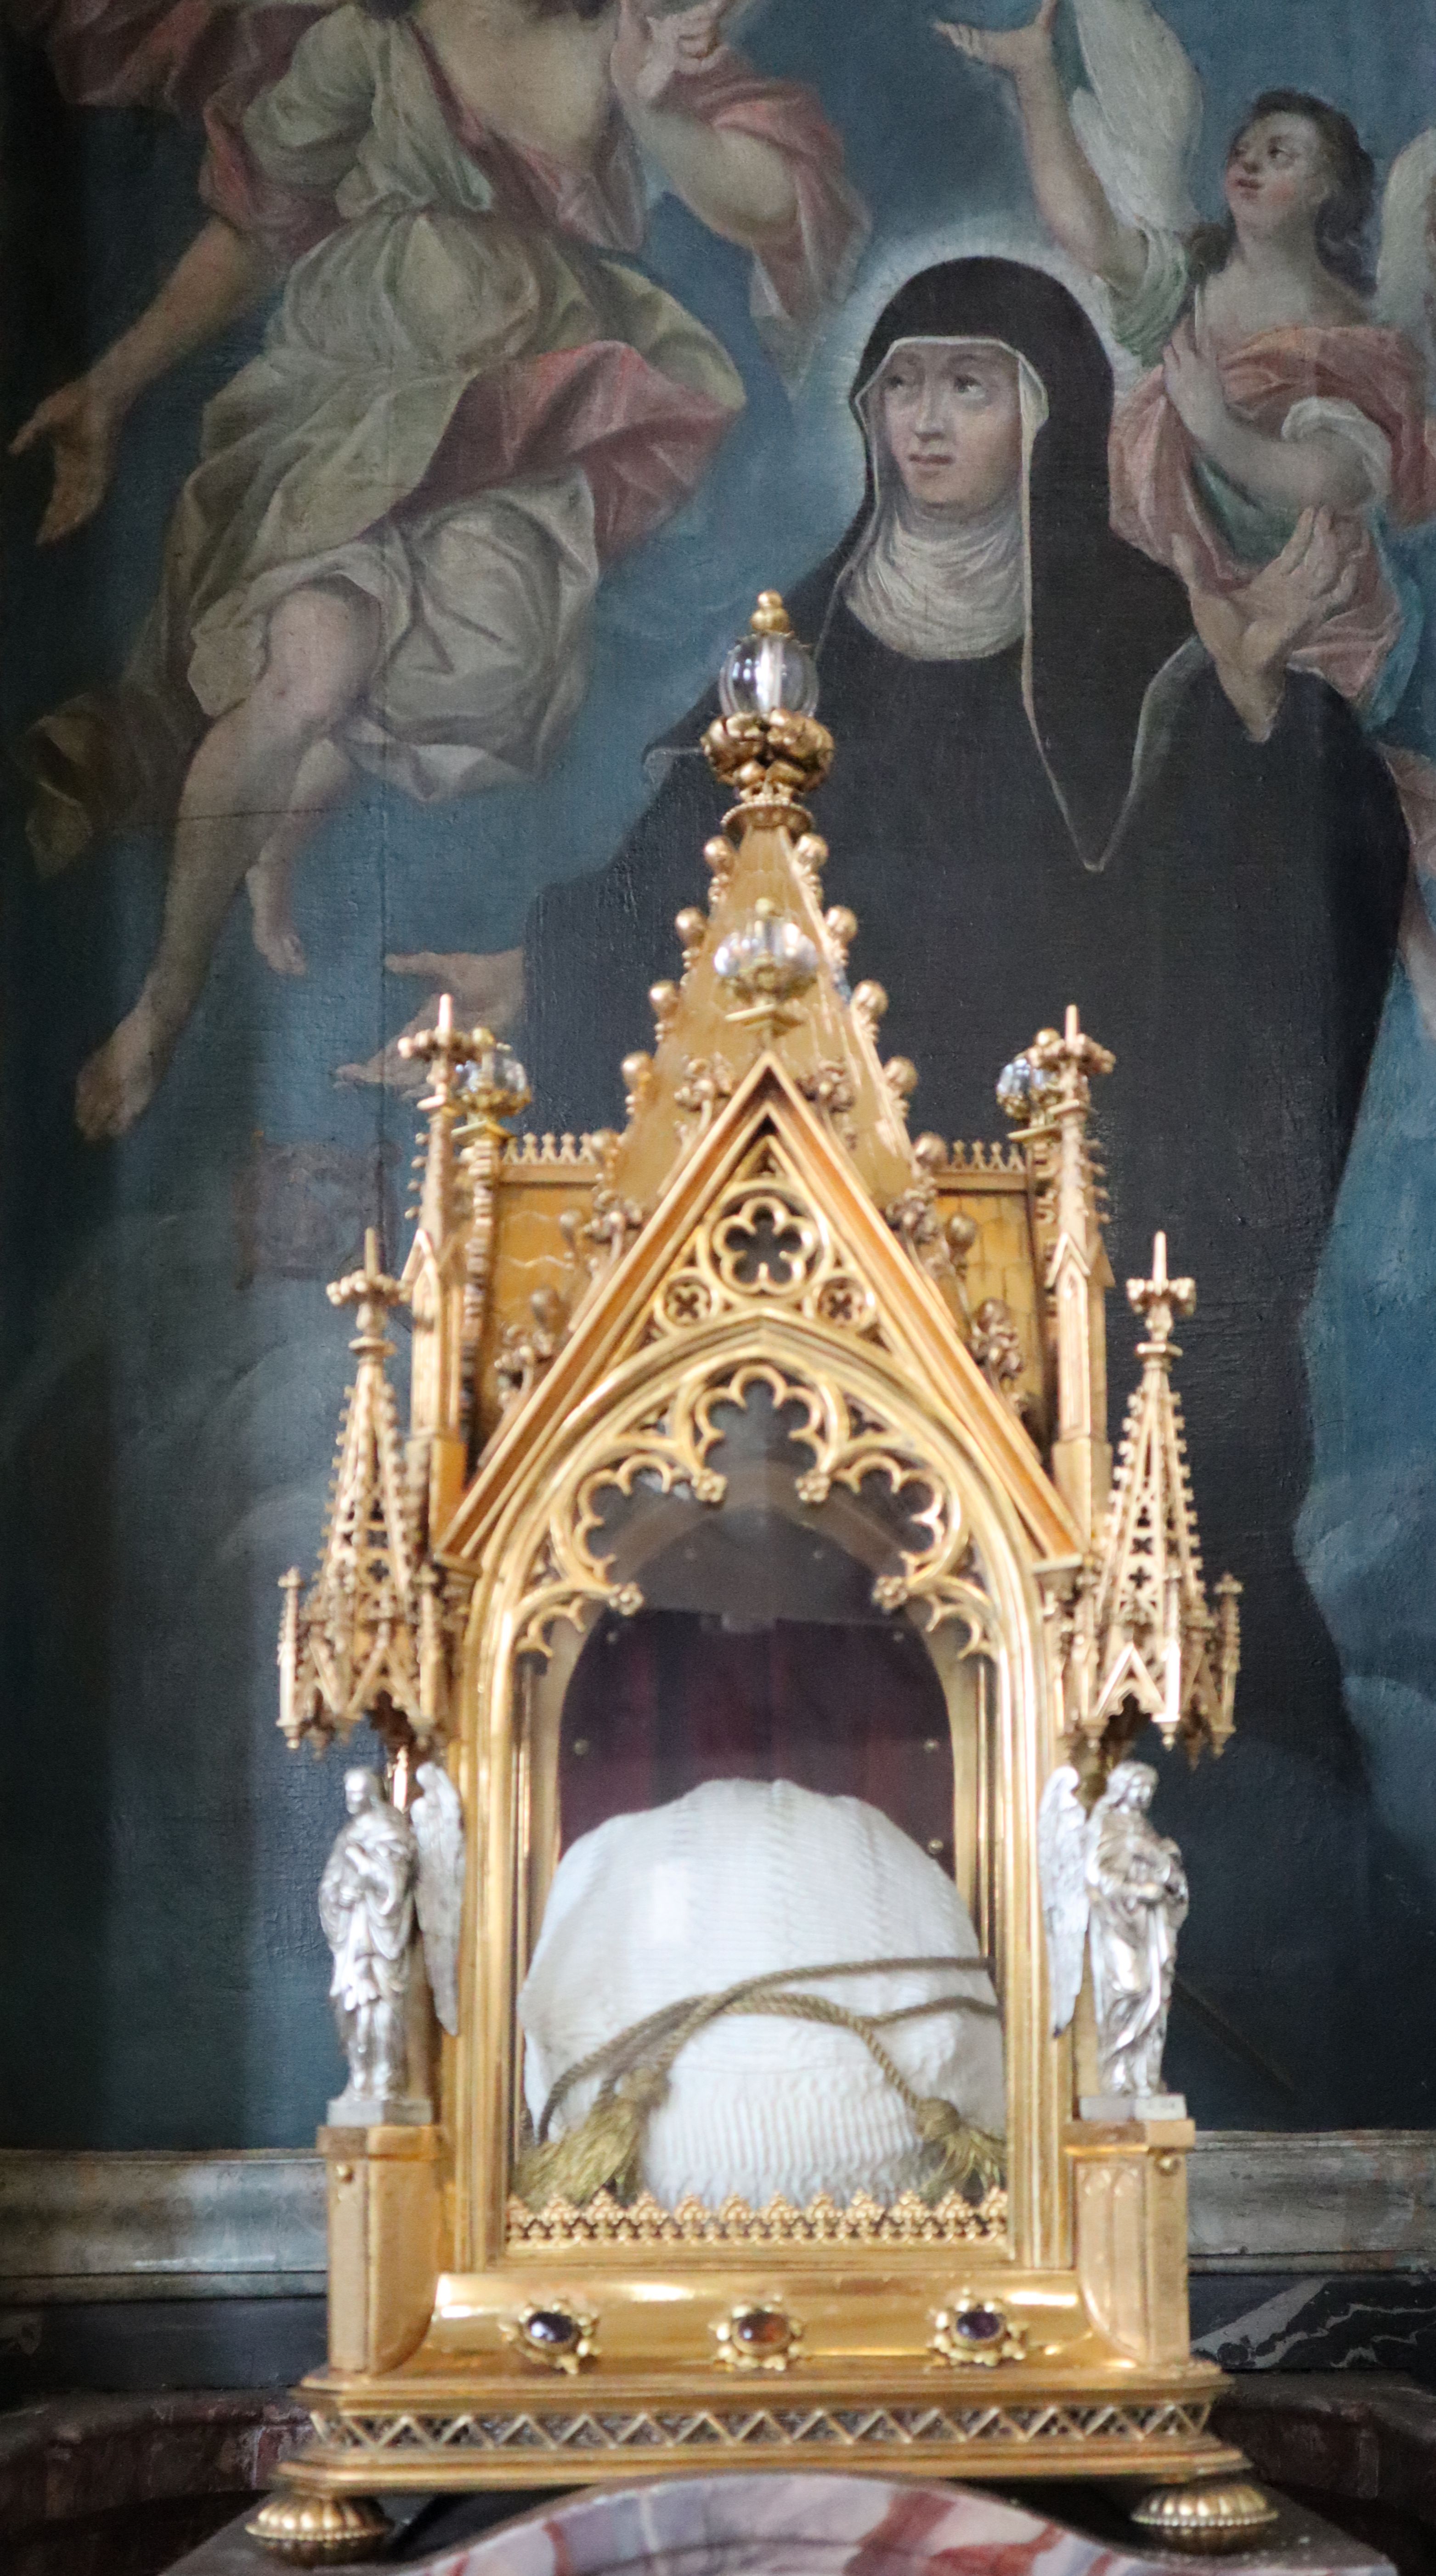 Altarbild und Schädelreliquier in der Kirche des ehemaligen Klosters Schönau